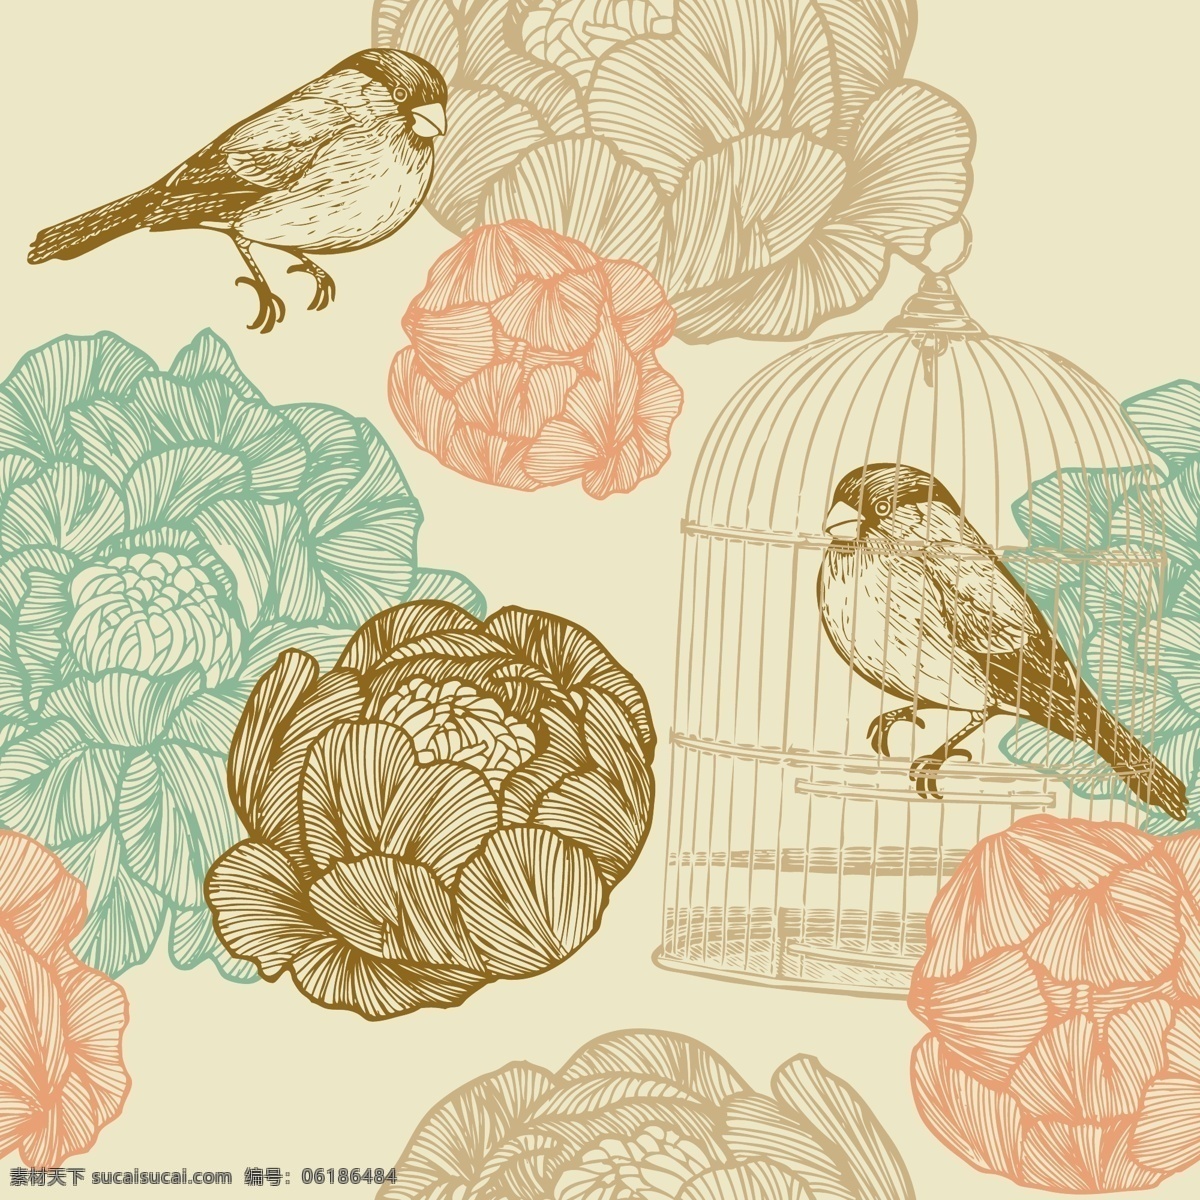 手绘 复古 牡丹 麻雀 鸟笼 矢量 彩色 矢量素材 设计素材